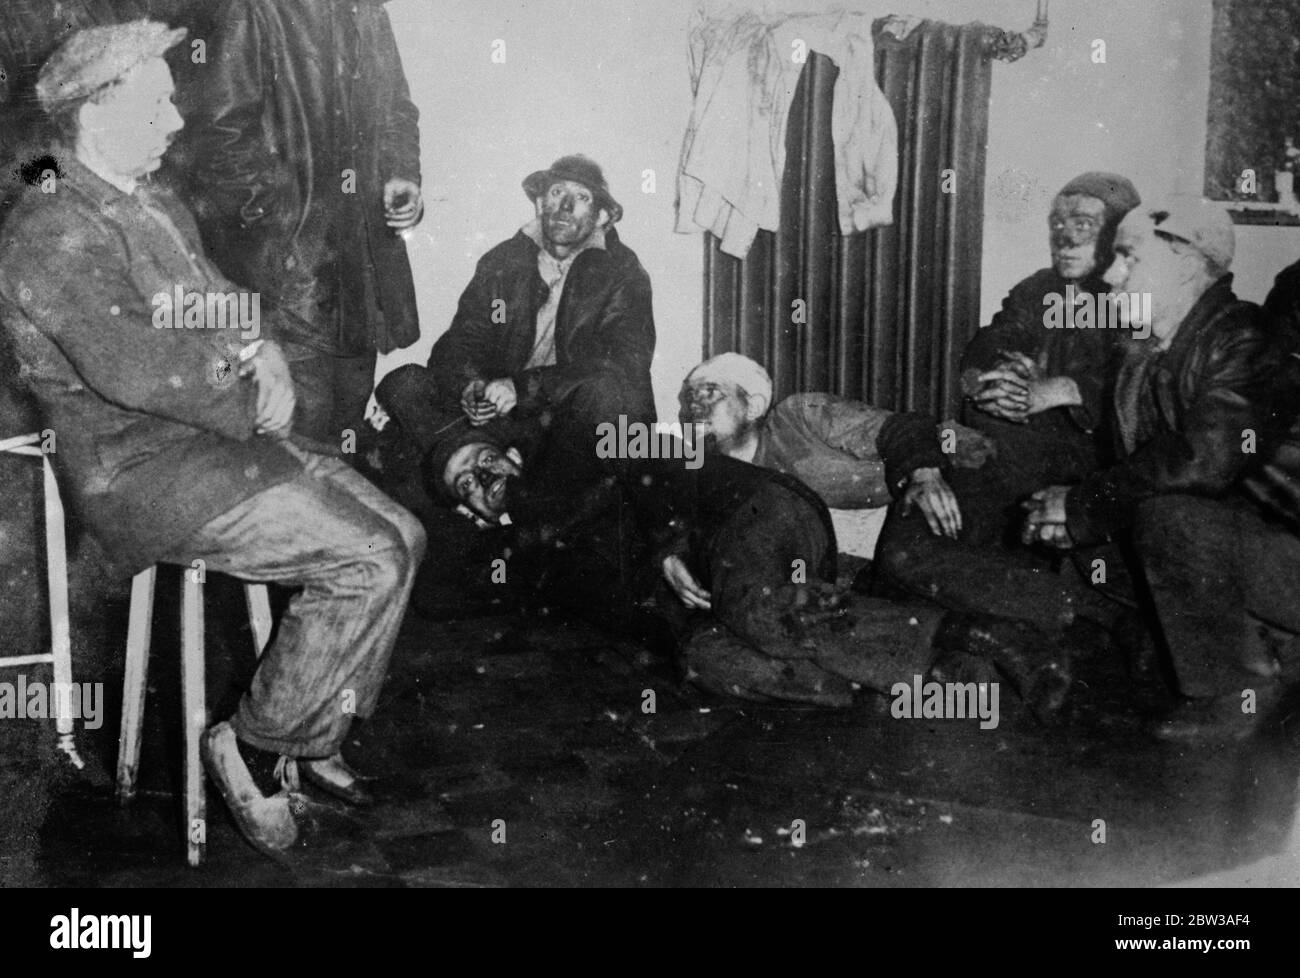 43 péris dans la catastrophe de la mine belge . Quarante-trois hommes se sont emmêtés lorsqu'une explosion désastreuse s'est produite dans une mine de charbon près de Paturage , en Belgique . L'explosion s'est produite dans une galerie 2 , 700 pieds sous terre . Après l'accident, la mine a été scellée . La photo montre les survivants après la catastrophe . 17 mai 1934 . Banque D'Images